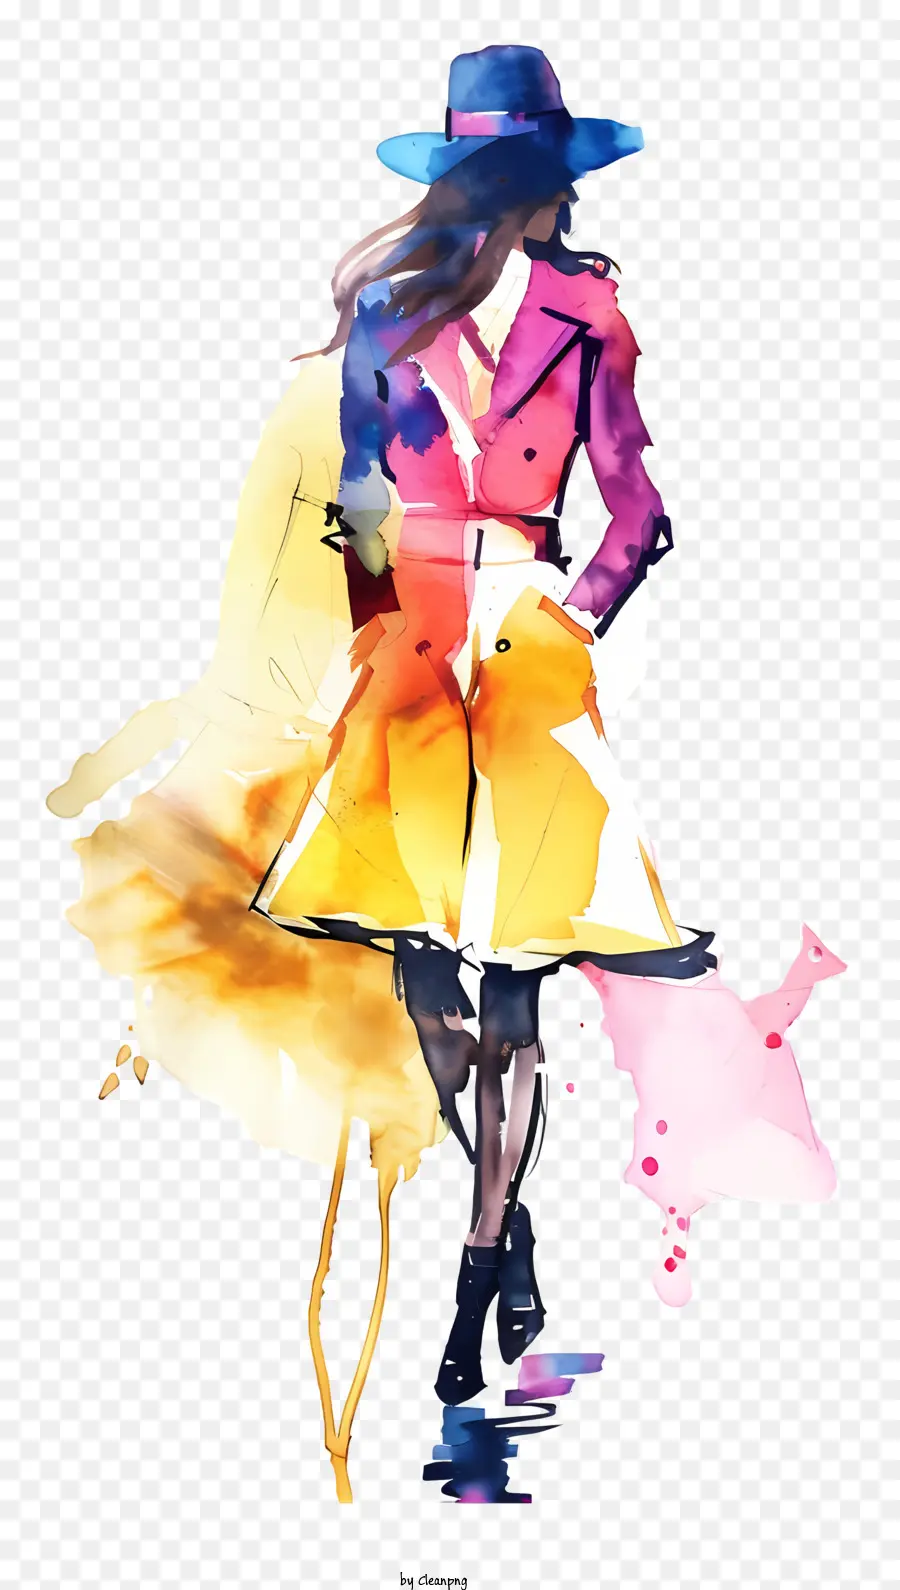 Mode Retro Bunte Mantel Großer Regenschirm Frau Walking Street - Frau im farbenfrohen Mantel und Regenschirm, der glücklich geht